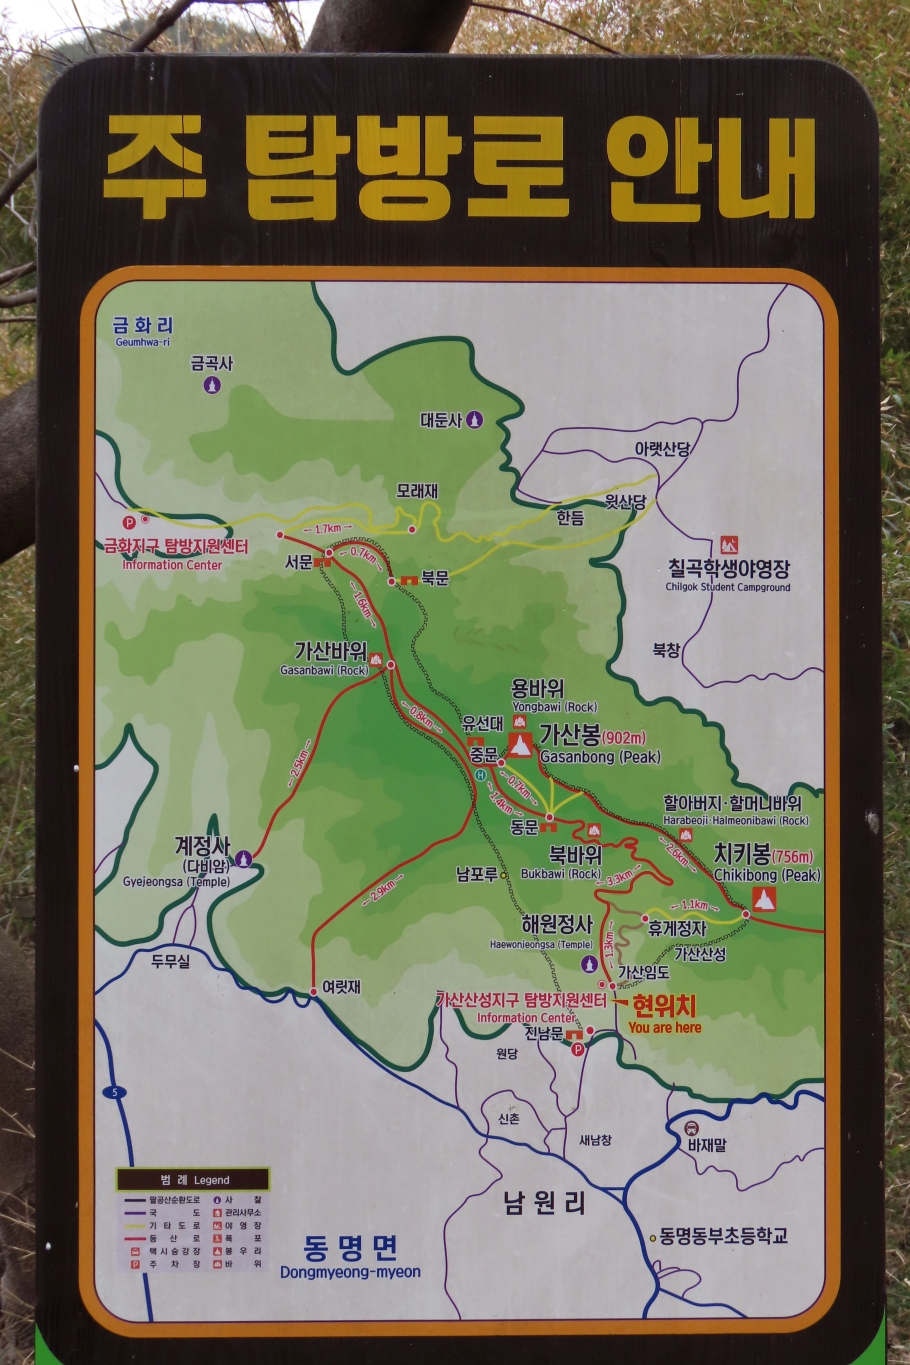 [팔공산국립공원] 가산산성지구 가산산성과 가산봉 탐방